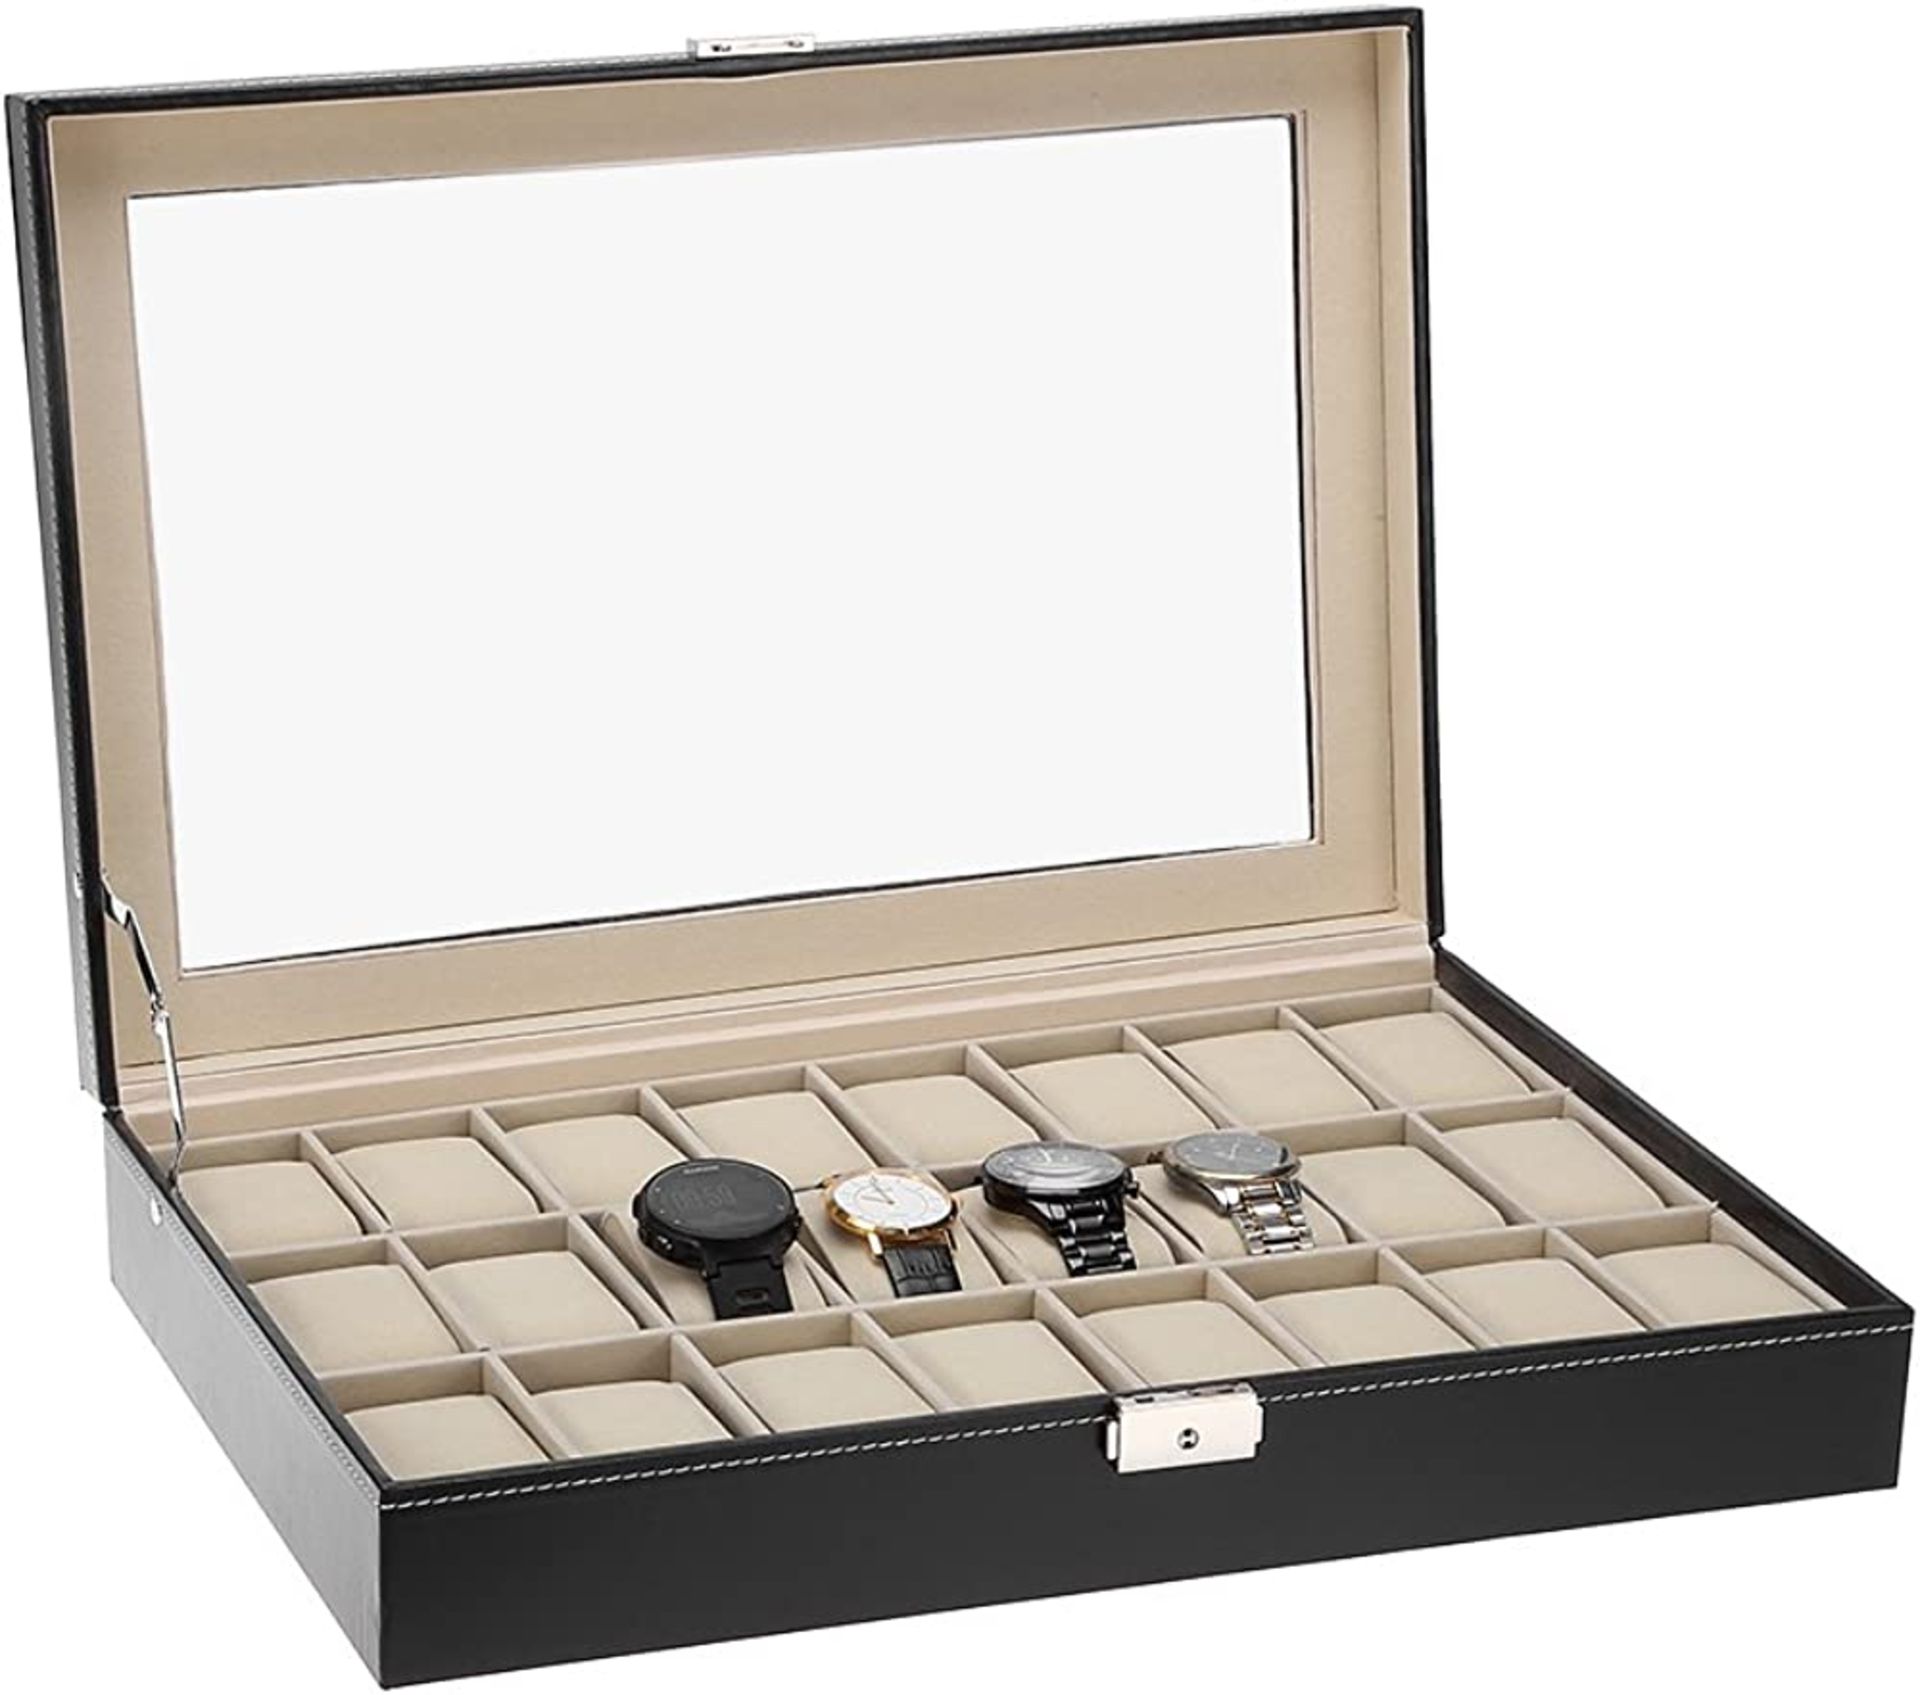 Uten 6 Watch Display Storage Box Jewelry Collection Case Organiser Holder